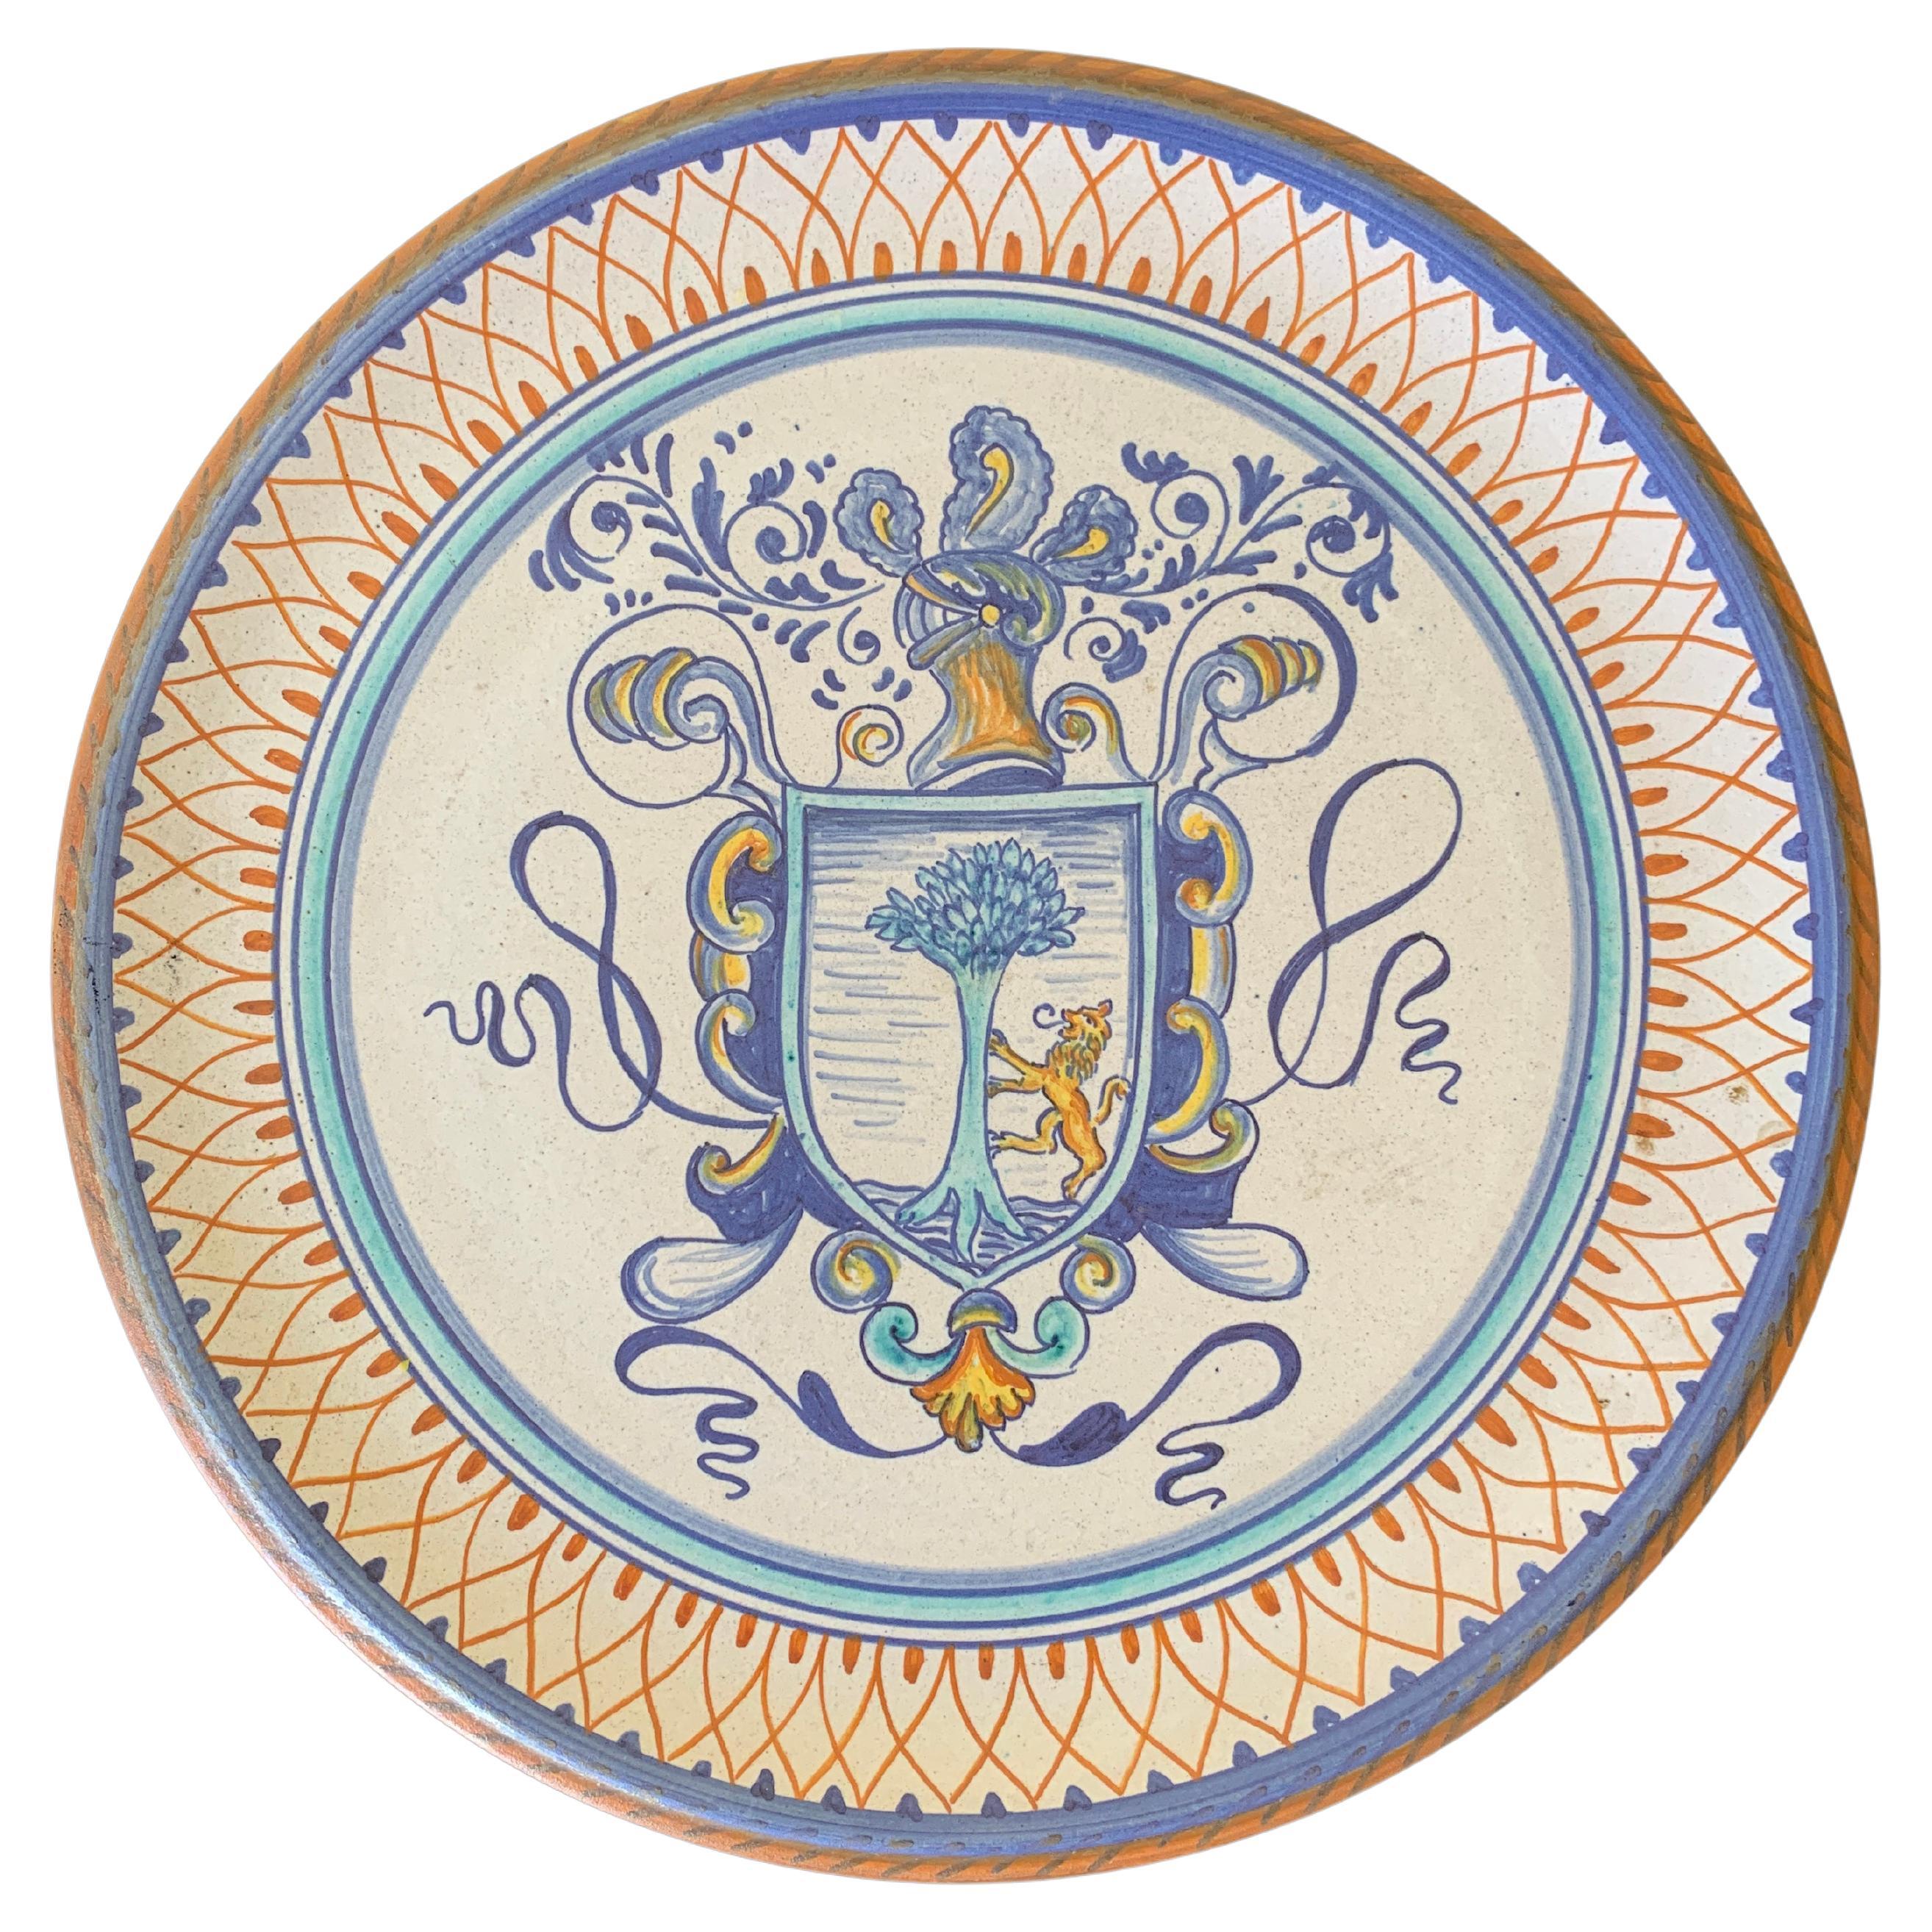 Italienische Provinz Deruta Hand gemalt Fayence Keramik Wandteller mit Wappen 